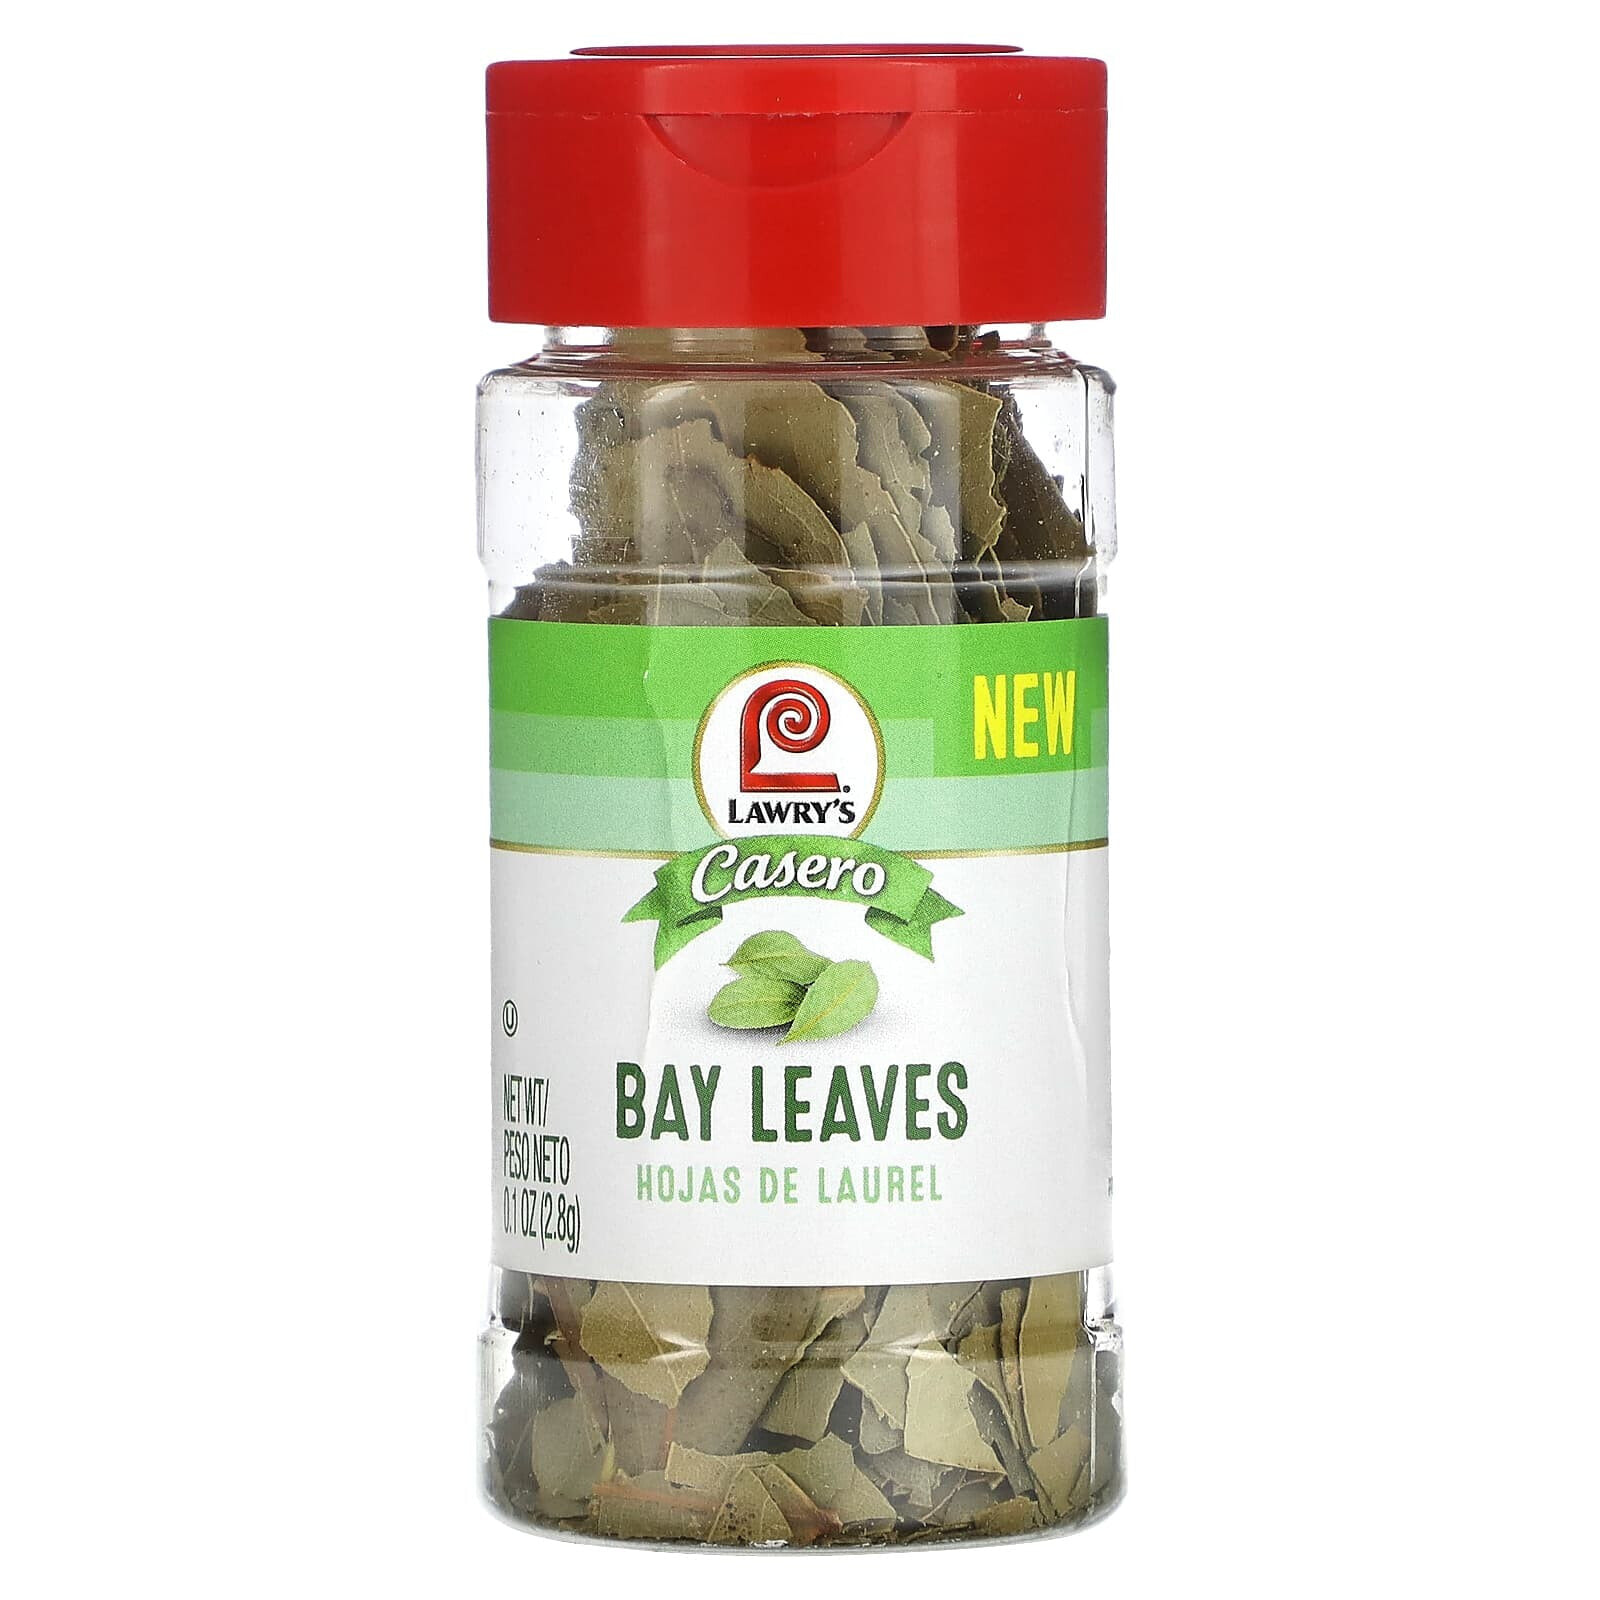 Casero, Bay Leaves, 0.1 oz (2.8 g)